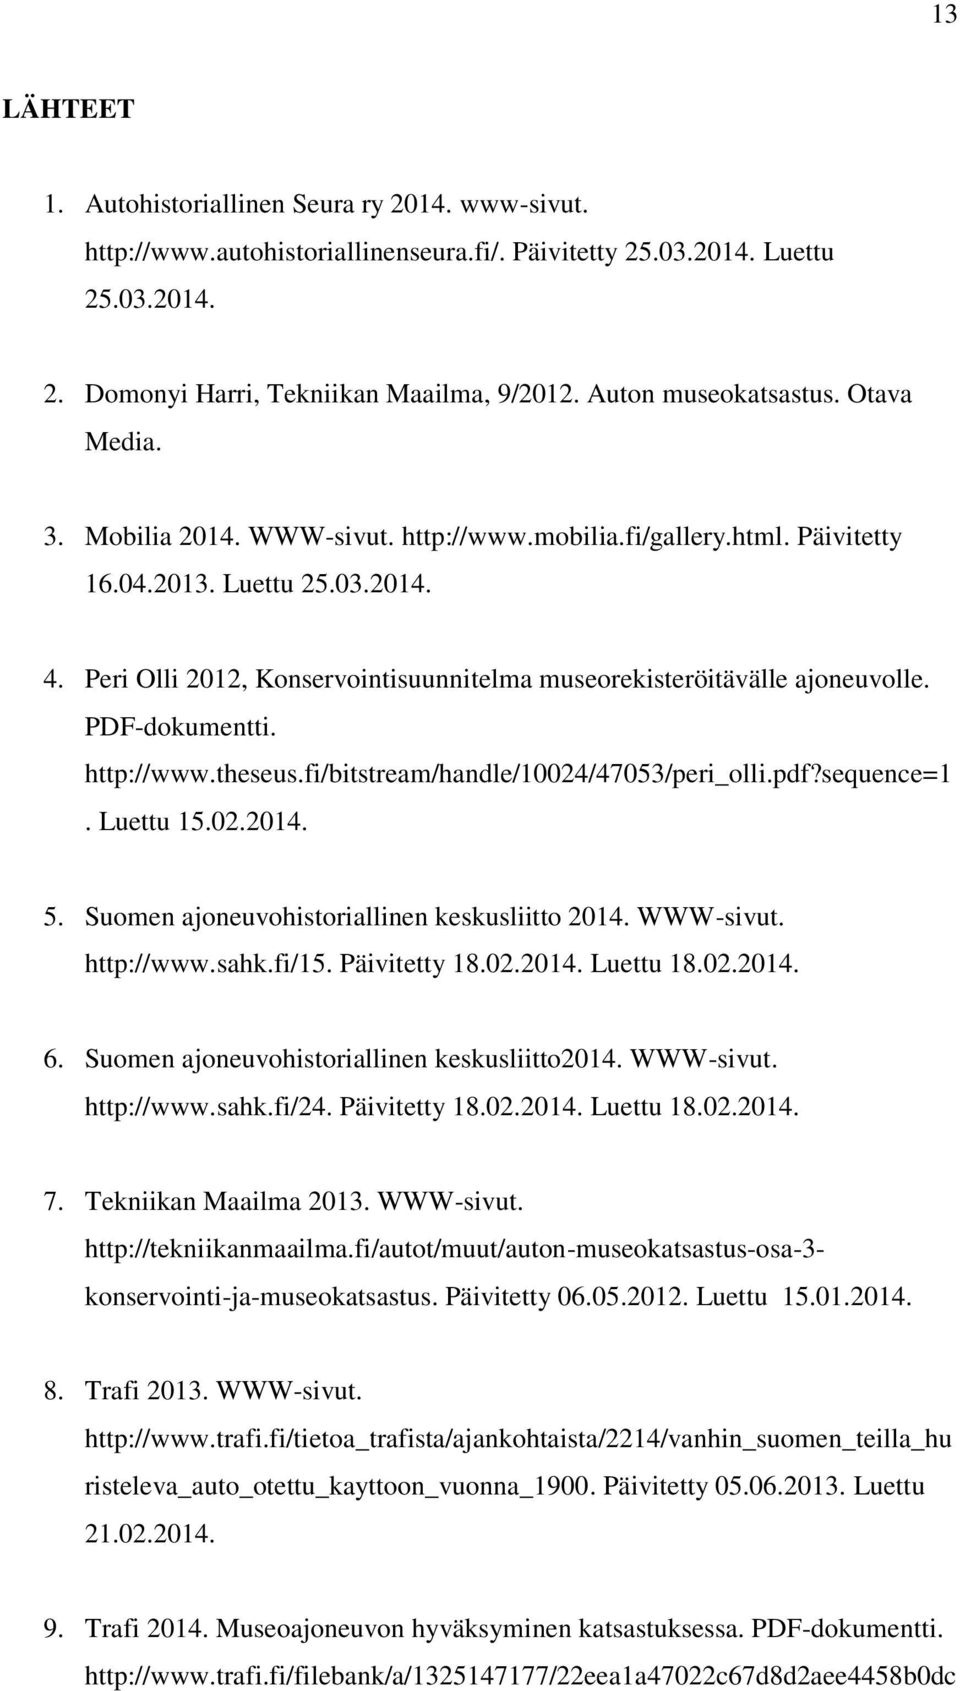 Peri Olli 2012, Konservointisuunnitelma museorekisteröitävälle ajoneuvolle. PDF-dokumentti. http://www.theseus.fi/bitstream/handle/10024/47053/peri_olli.pdf?sequence=1. Luettu 15.02.2014. 5.